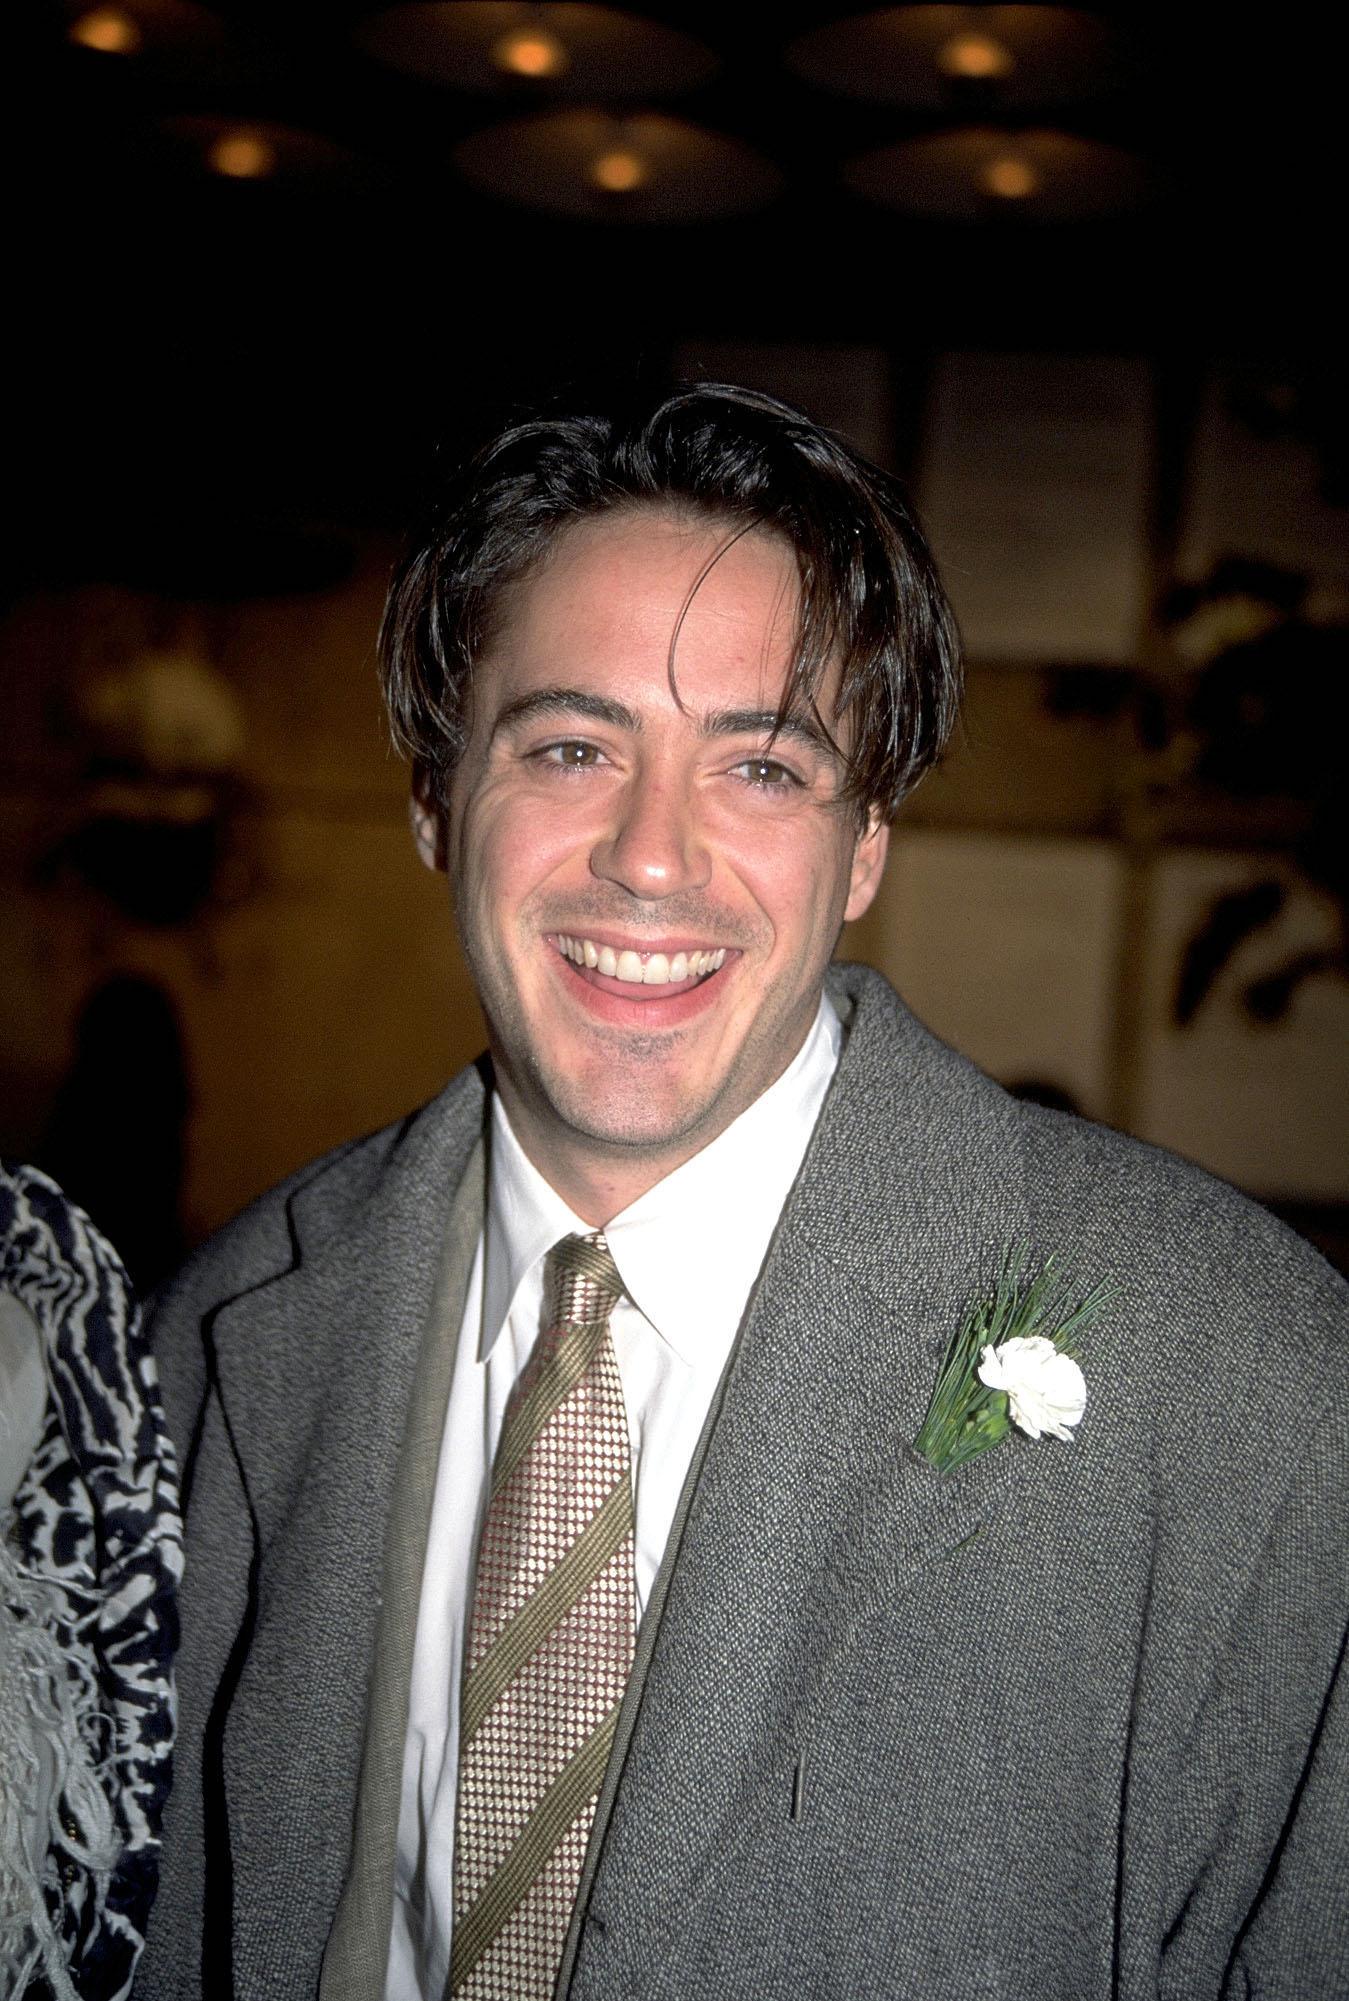 Robert Downey Jr. in 1999